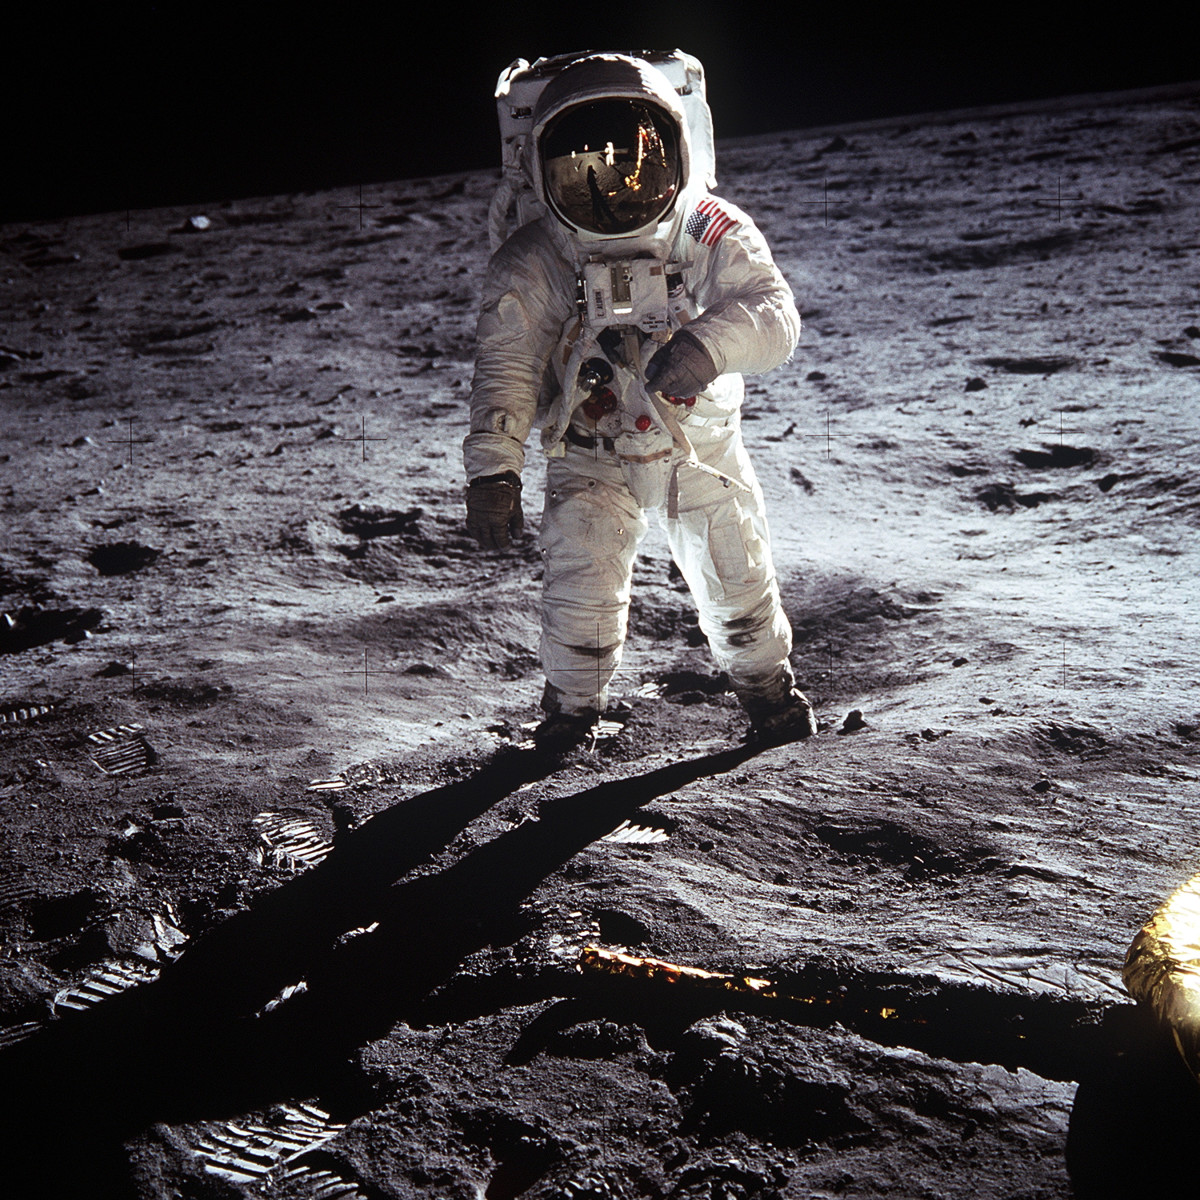  Buzz Aldrin Walks on the Moon, July 20, 1969